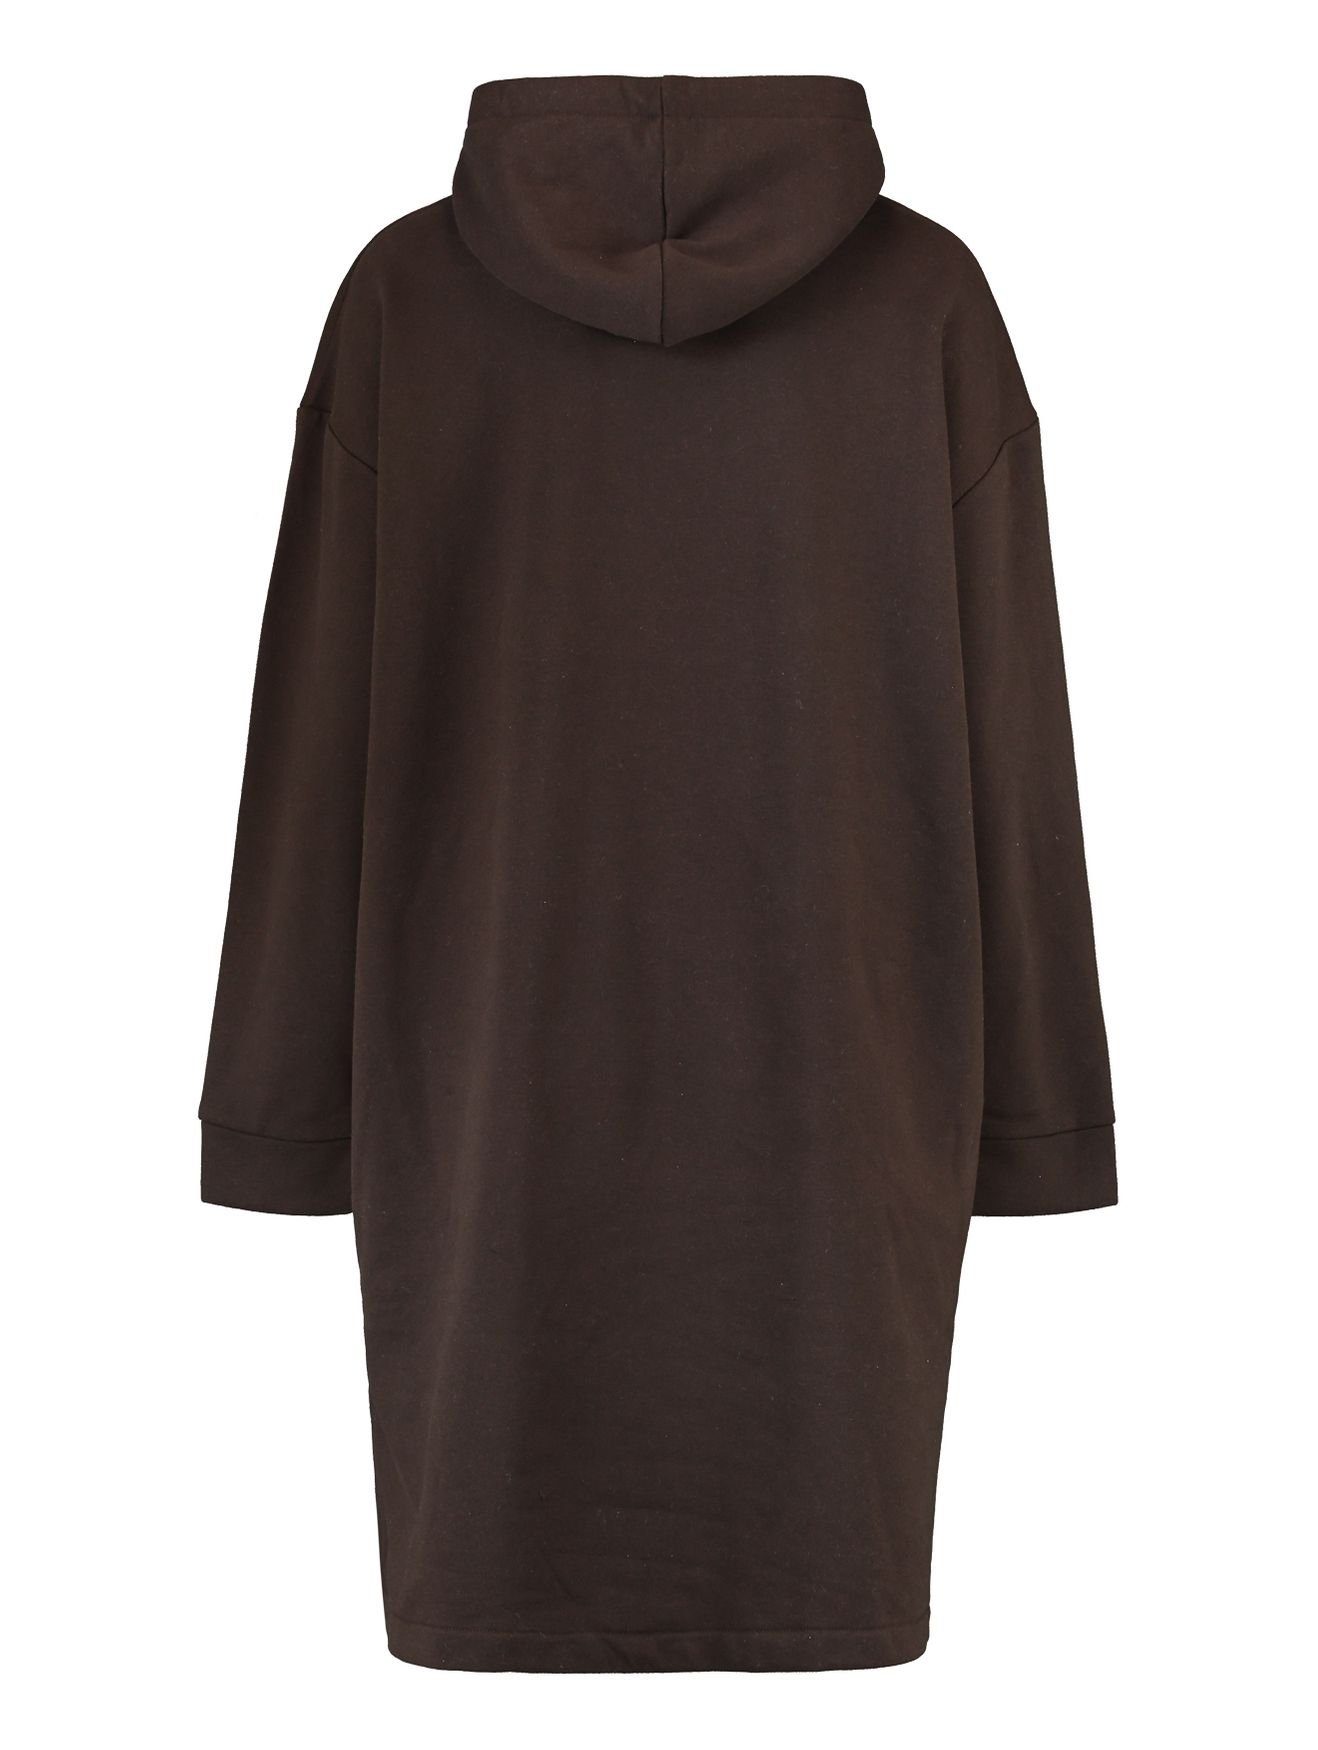 Dress SWERA (lang) Shirtkleid Sweat Braun-2 4705 Knielang Kapuzen HaILY’S Hoodie Mini Kleid in Pullover